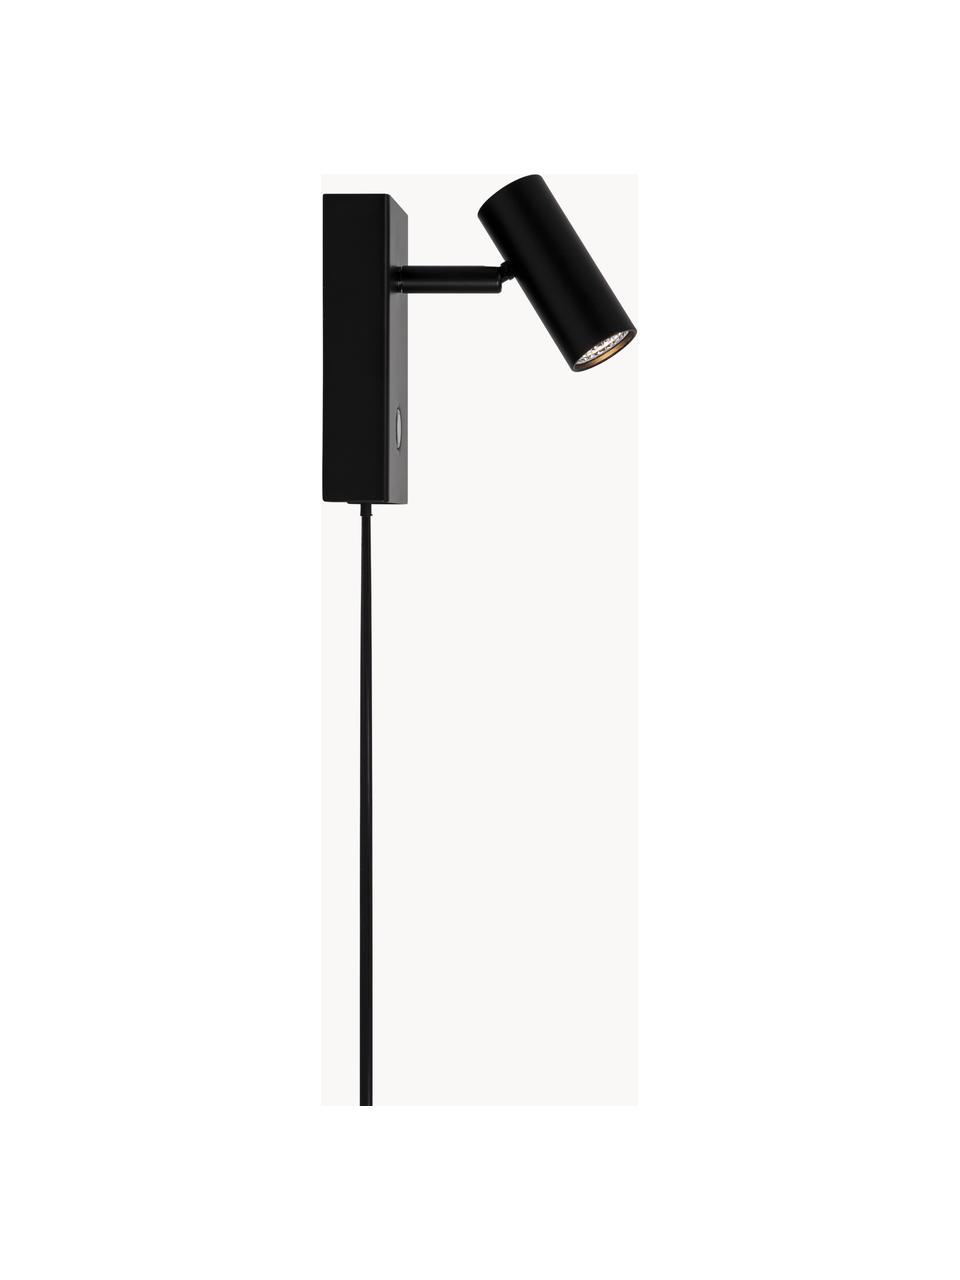 Petite applique LED à intensité variable Omari, Noir, larg. 7 x haut. 12 cm